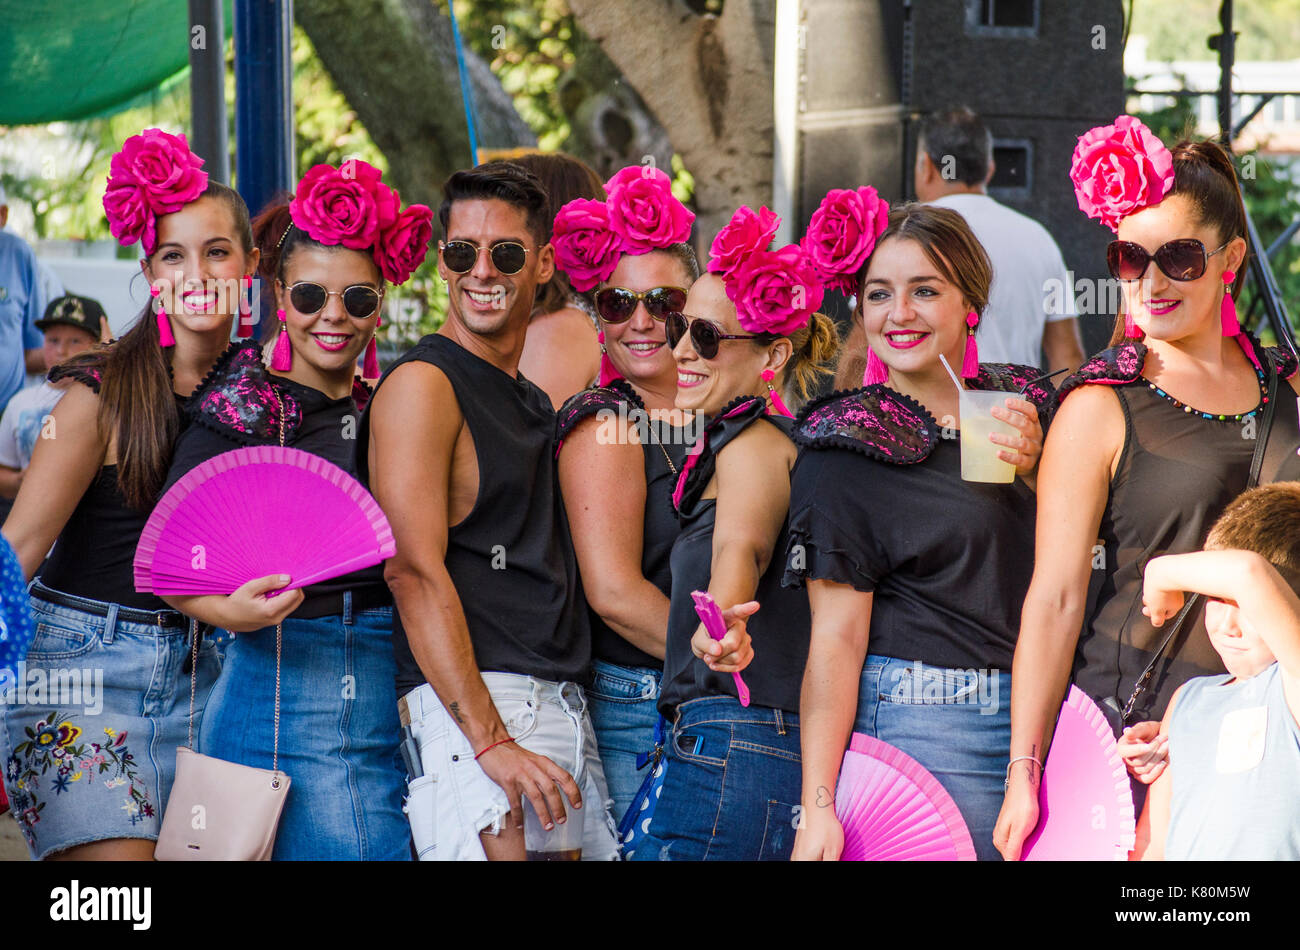 Gruppe von Frauen und einem Mann, Freunde, die während der Feria-Feierlichkeiten im spanischen Dorf Mijas, Spanien posieren. Stockfoto